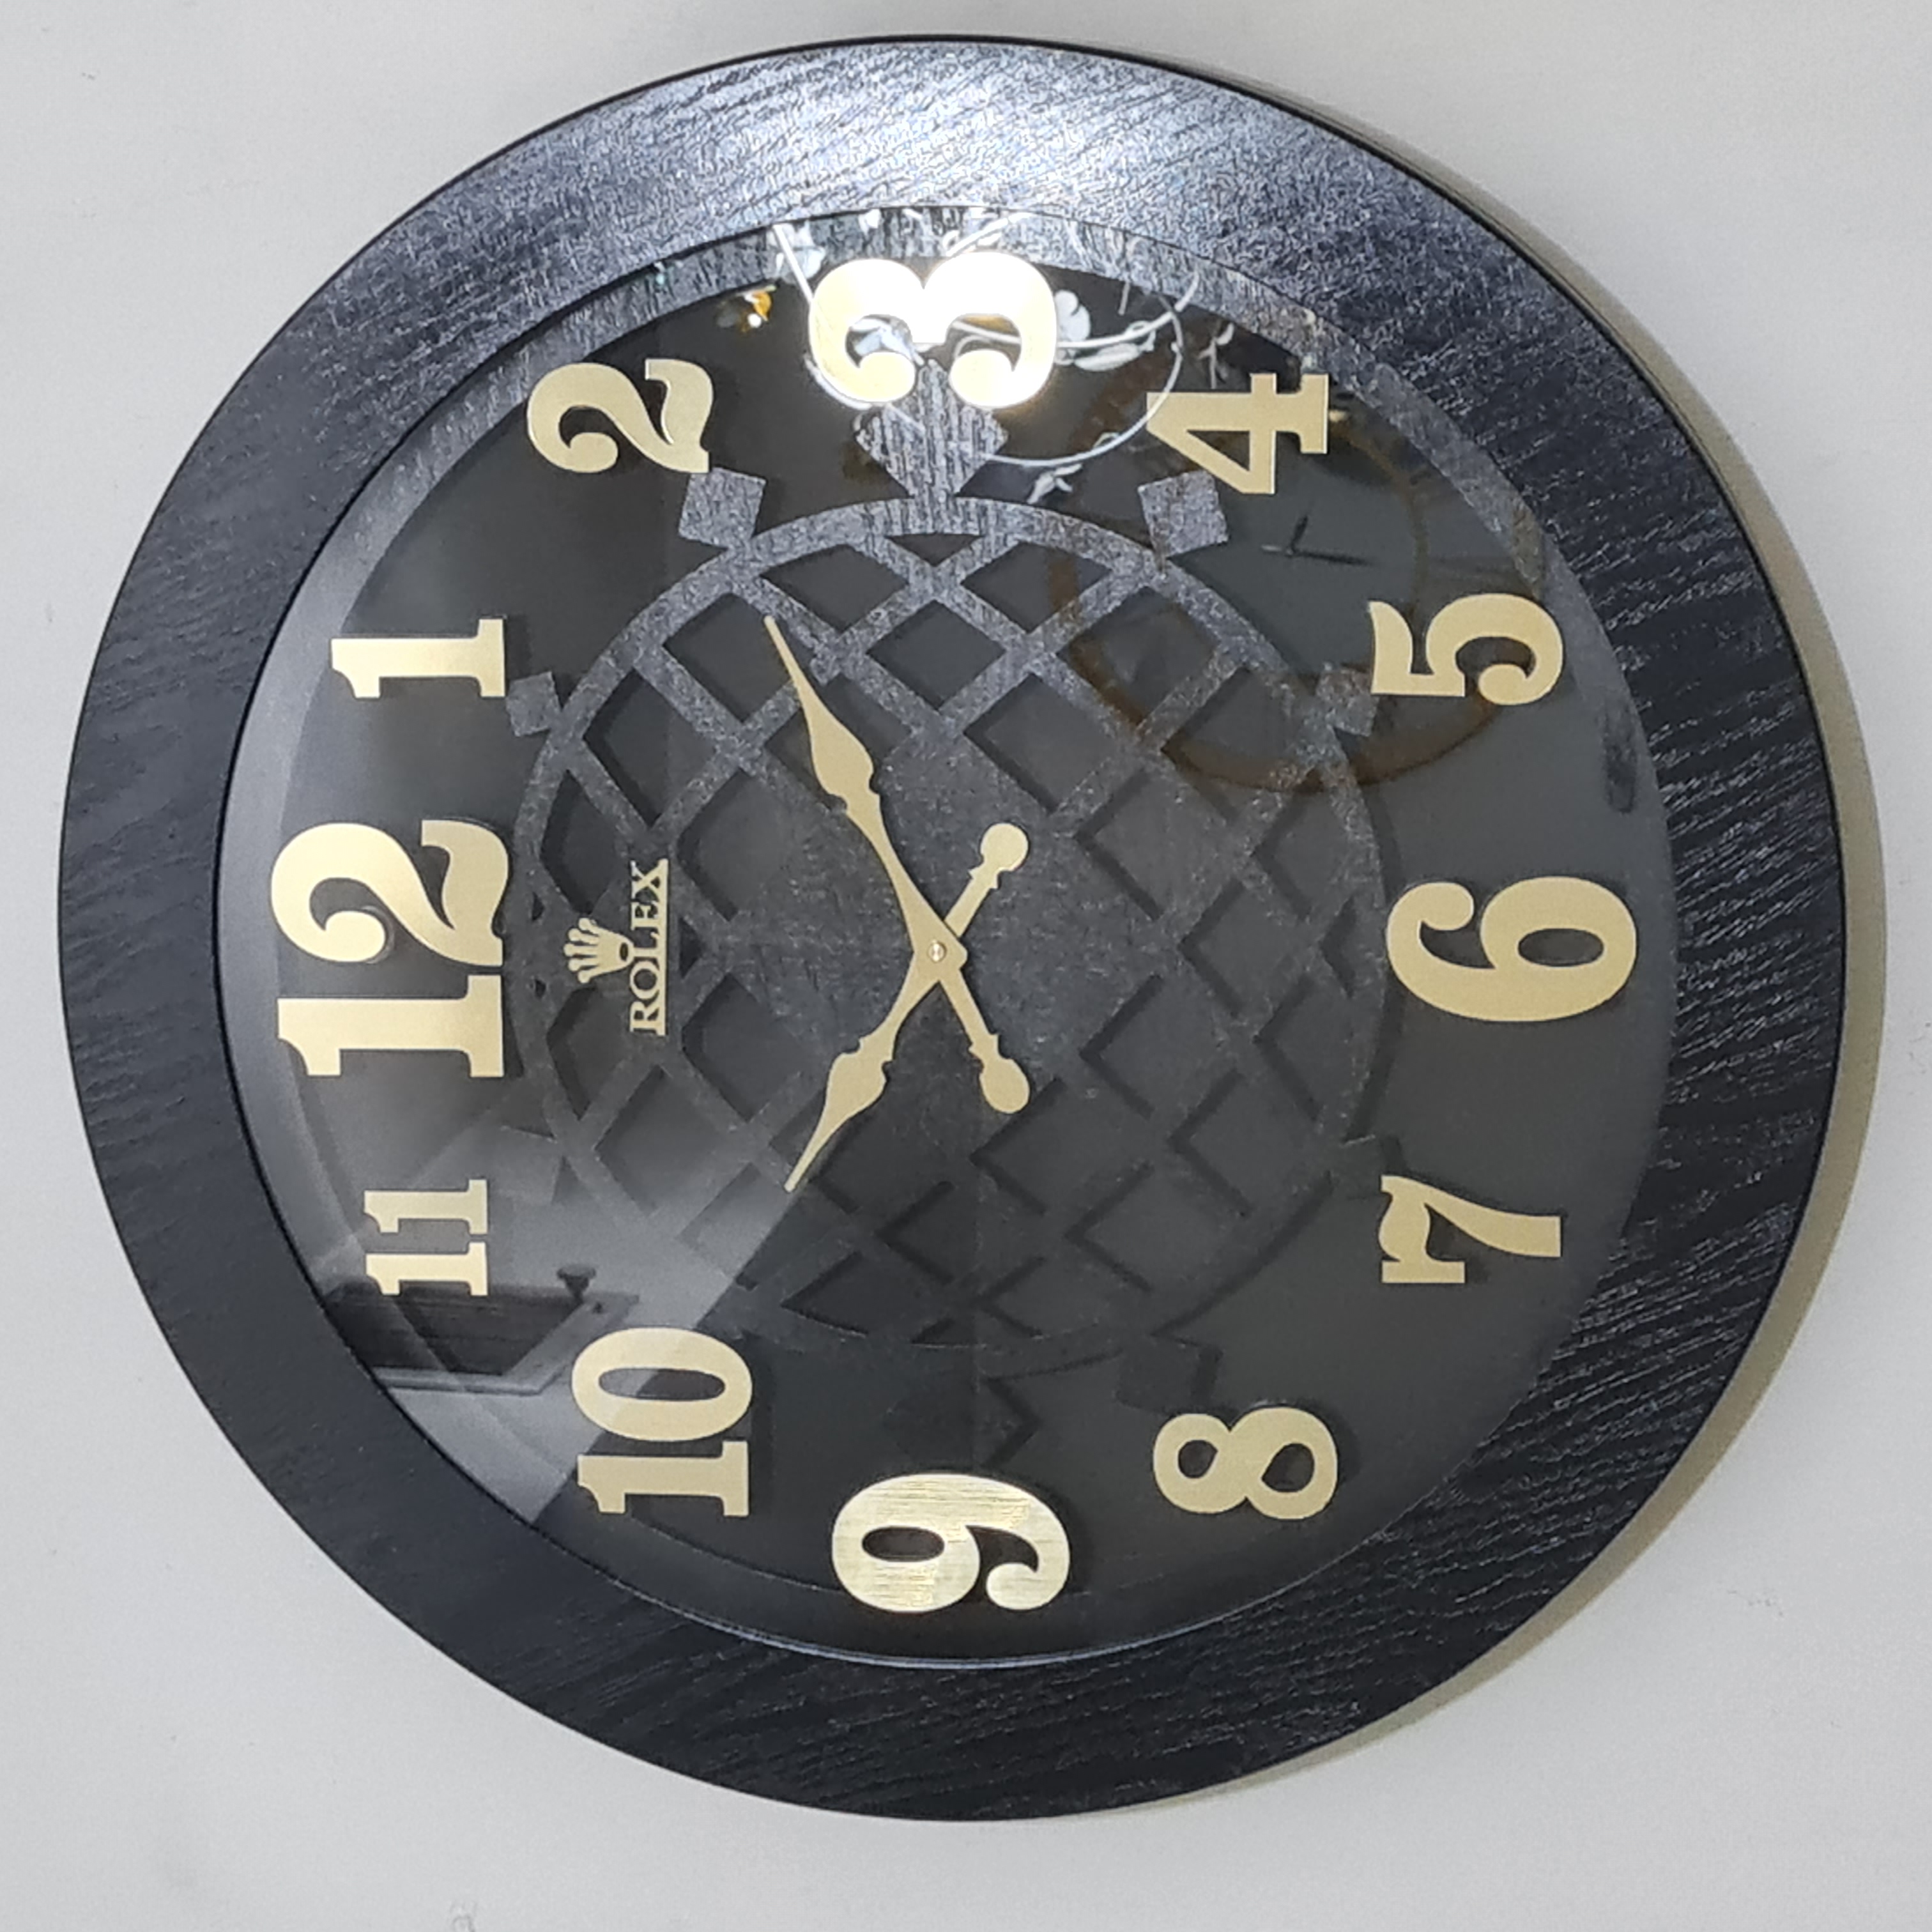 ساعت دیواری تمام چوبیر رولکس ۱۱۱ قطر ۶۰ سانت در چهار رنگ مختلف بسیار زیبا و با کیفیت